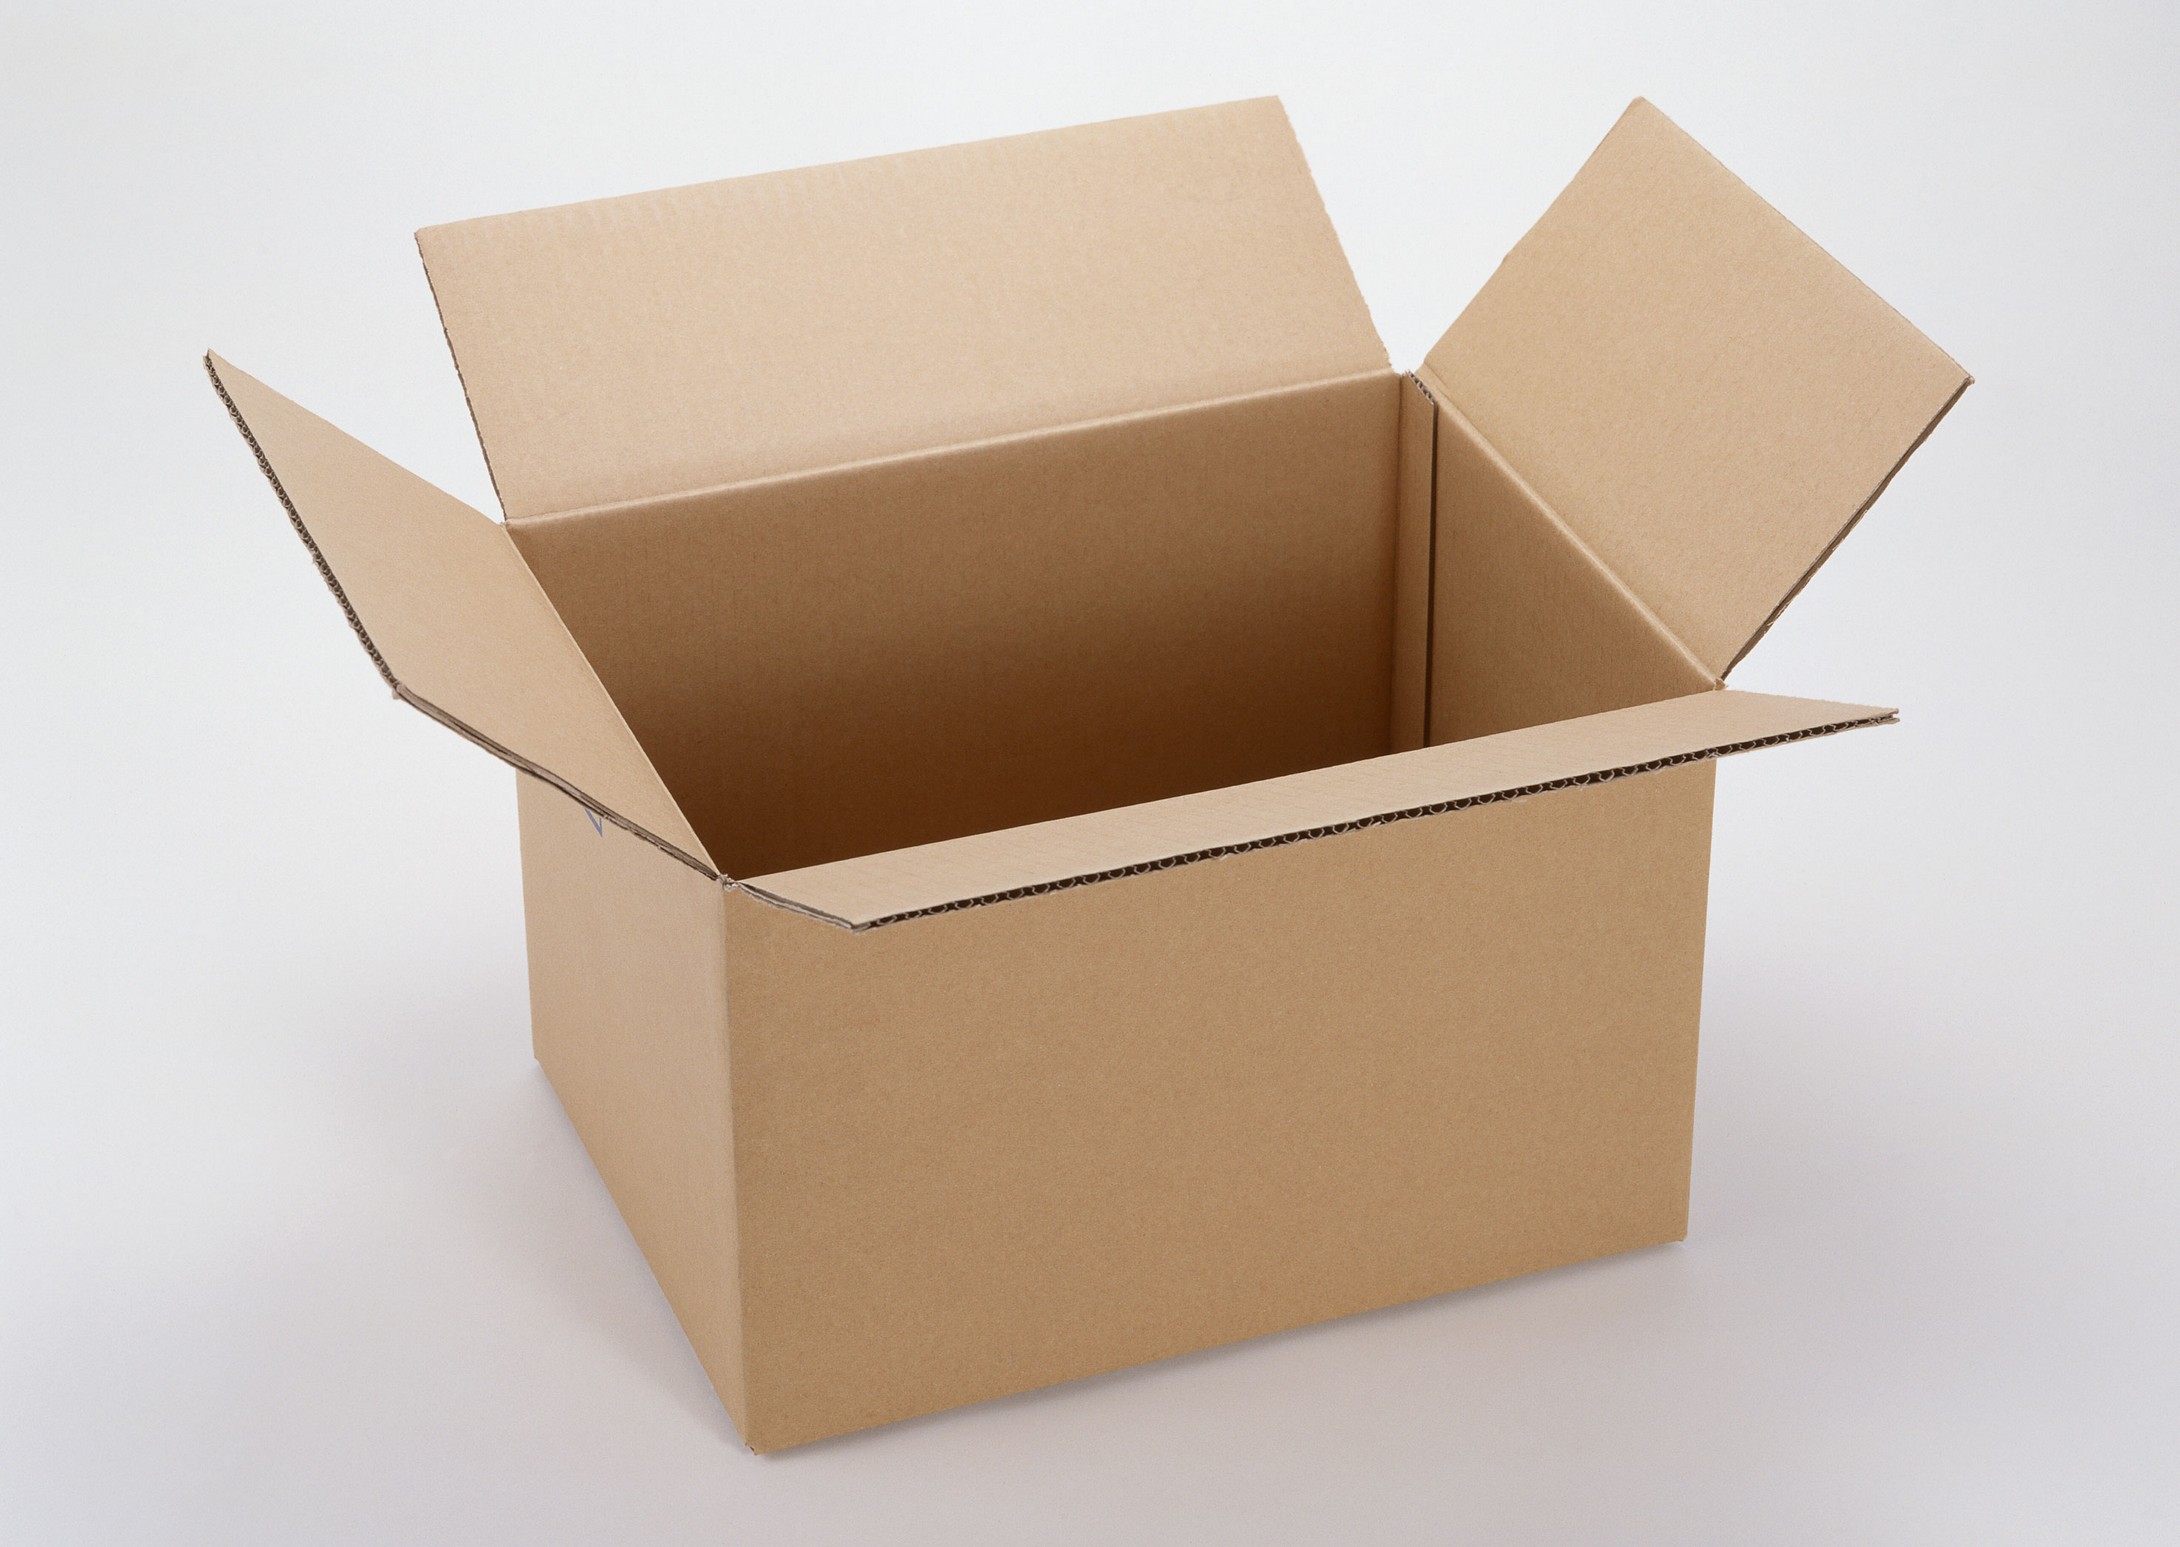 哈尔滨哪里有纸箱卖_彩盒裱纸走位问题的解决办法